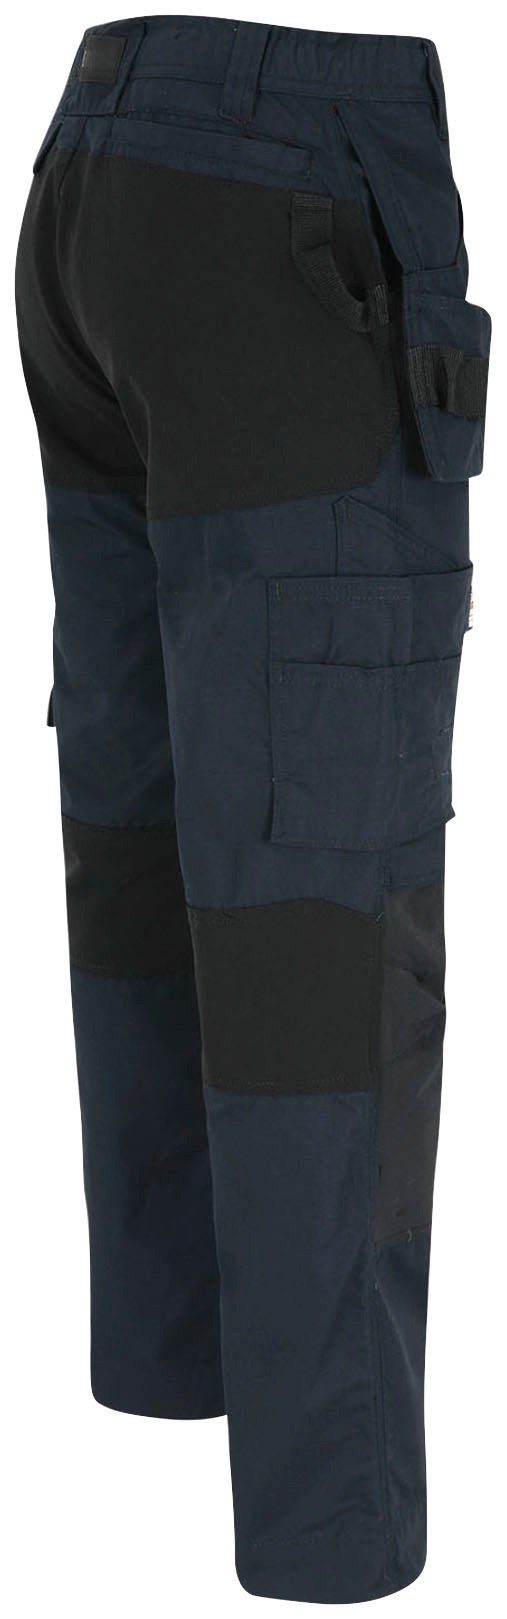 Hose festen und 4-Wege-Stretch-Teilen 2 Multi-Pocket-Hose Spector marine Nageltaschen Herock Arbeitshose mit